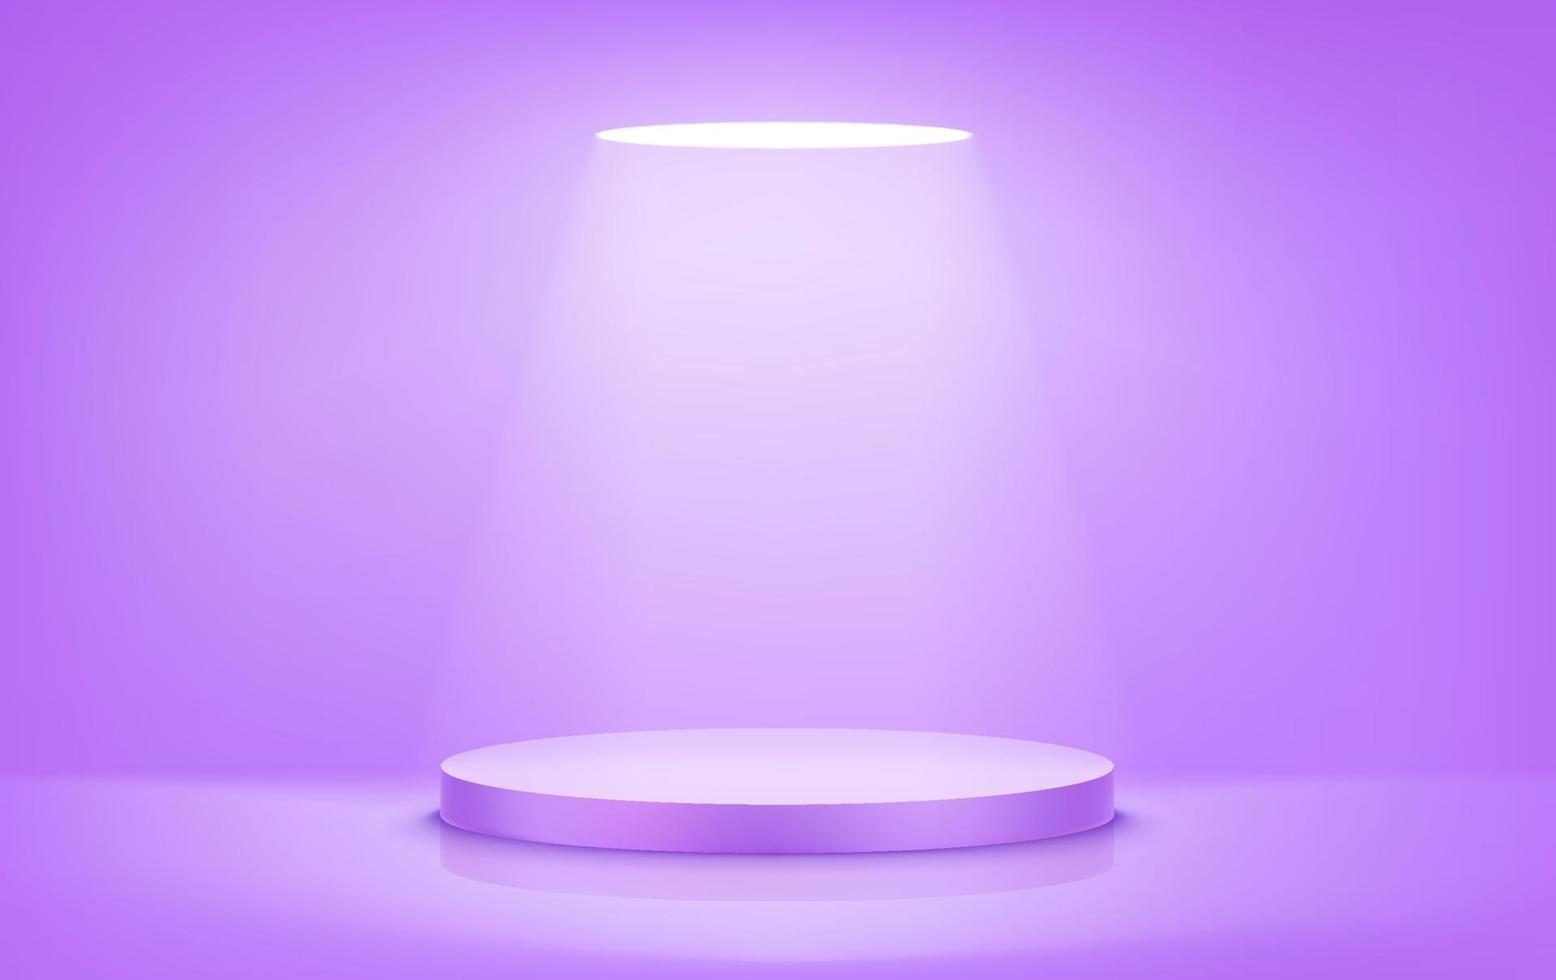 Escenario redondo violeta iluminado con luz brillante. ilustración vectorial realista vector